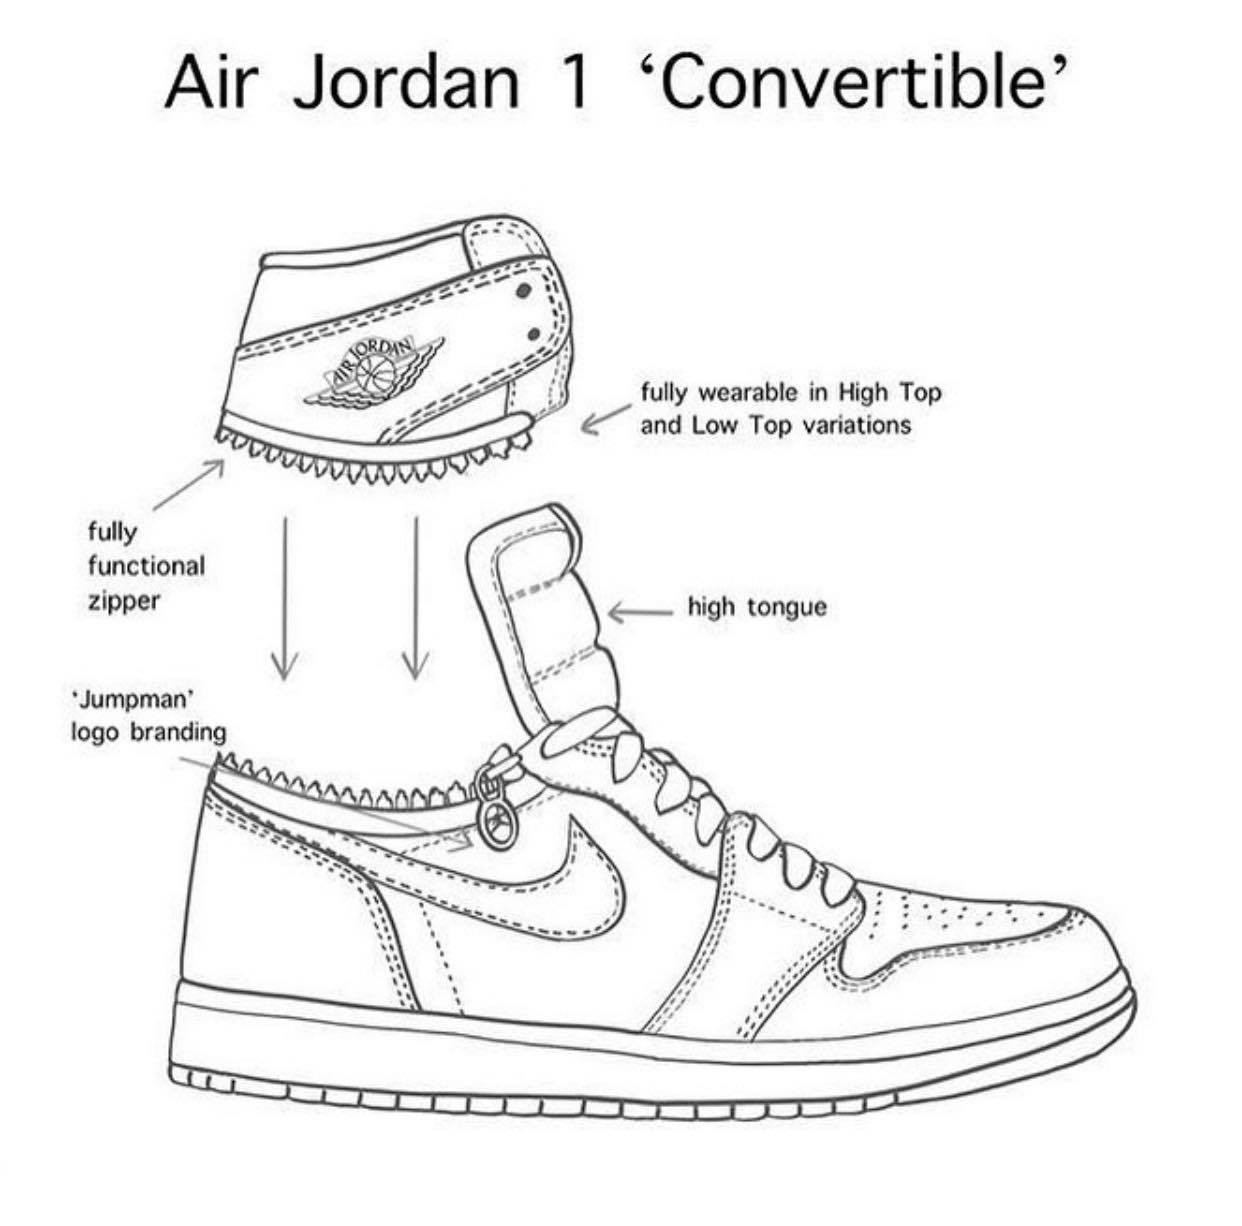 Jordan 1 luôn là tượng đài bất diệt trong giới giày thể thao. Với hình ảnh đầy màu sắc và độc đáo này, bạn sẽ được chiêm ngưỡng những mẫu giày jordan 1 đẹp và độc nhất vô nhị, dành cho những ai yêu thích phong cách đậm chất hoài cổ.